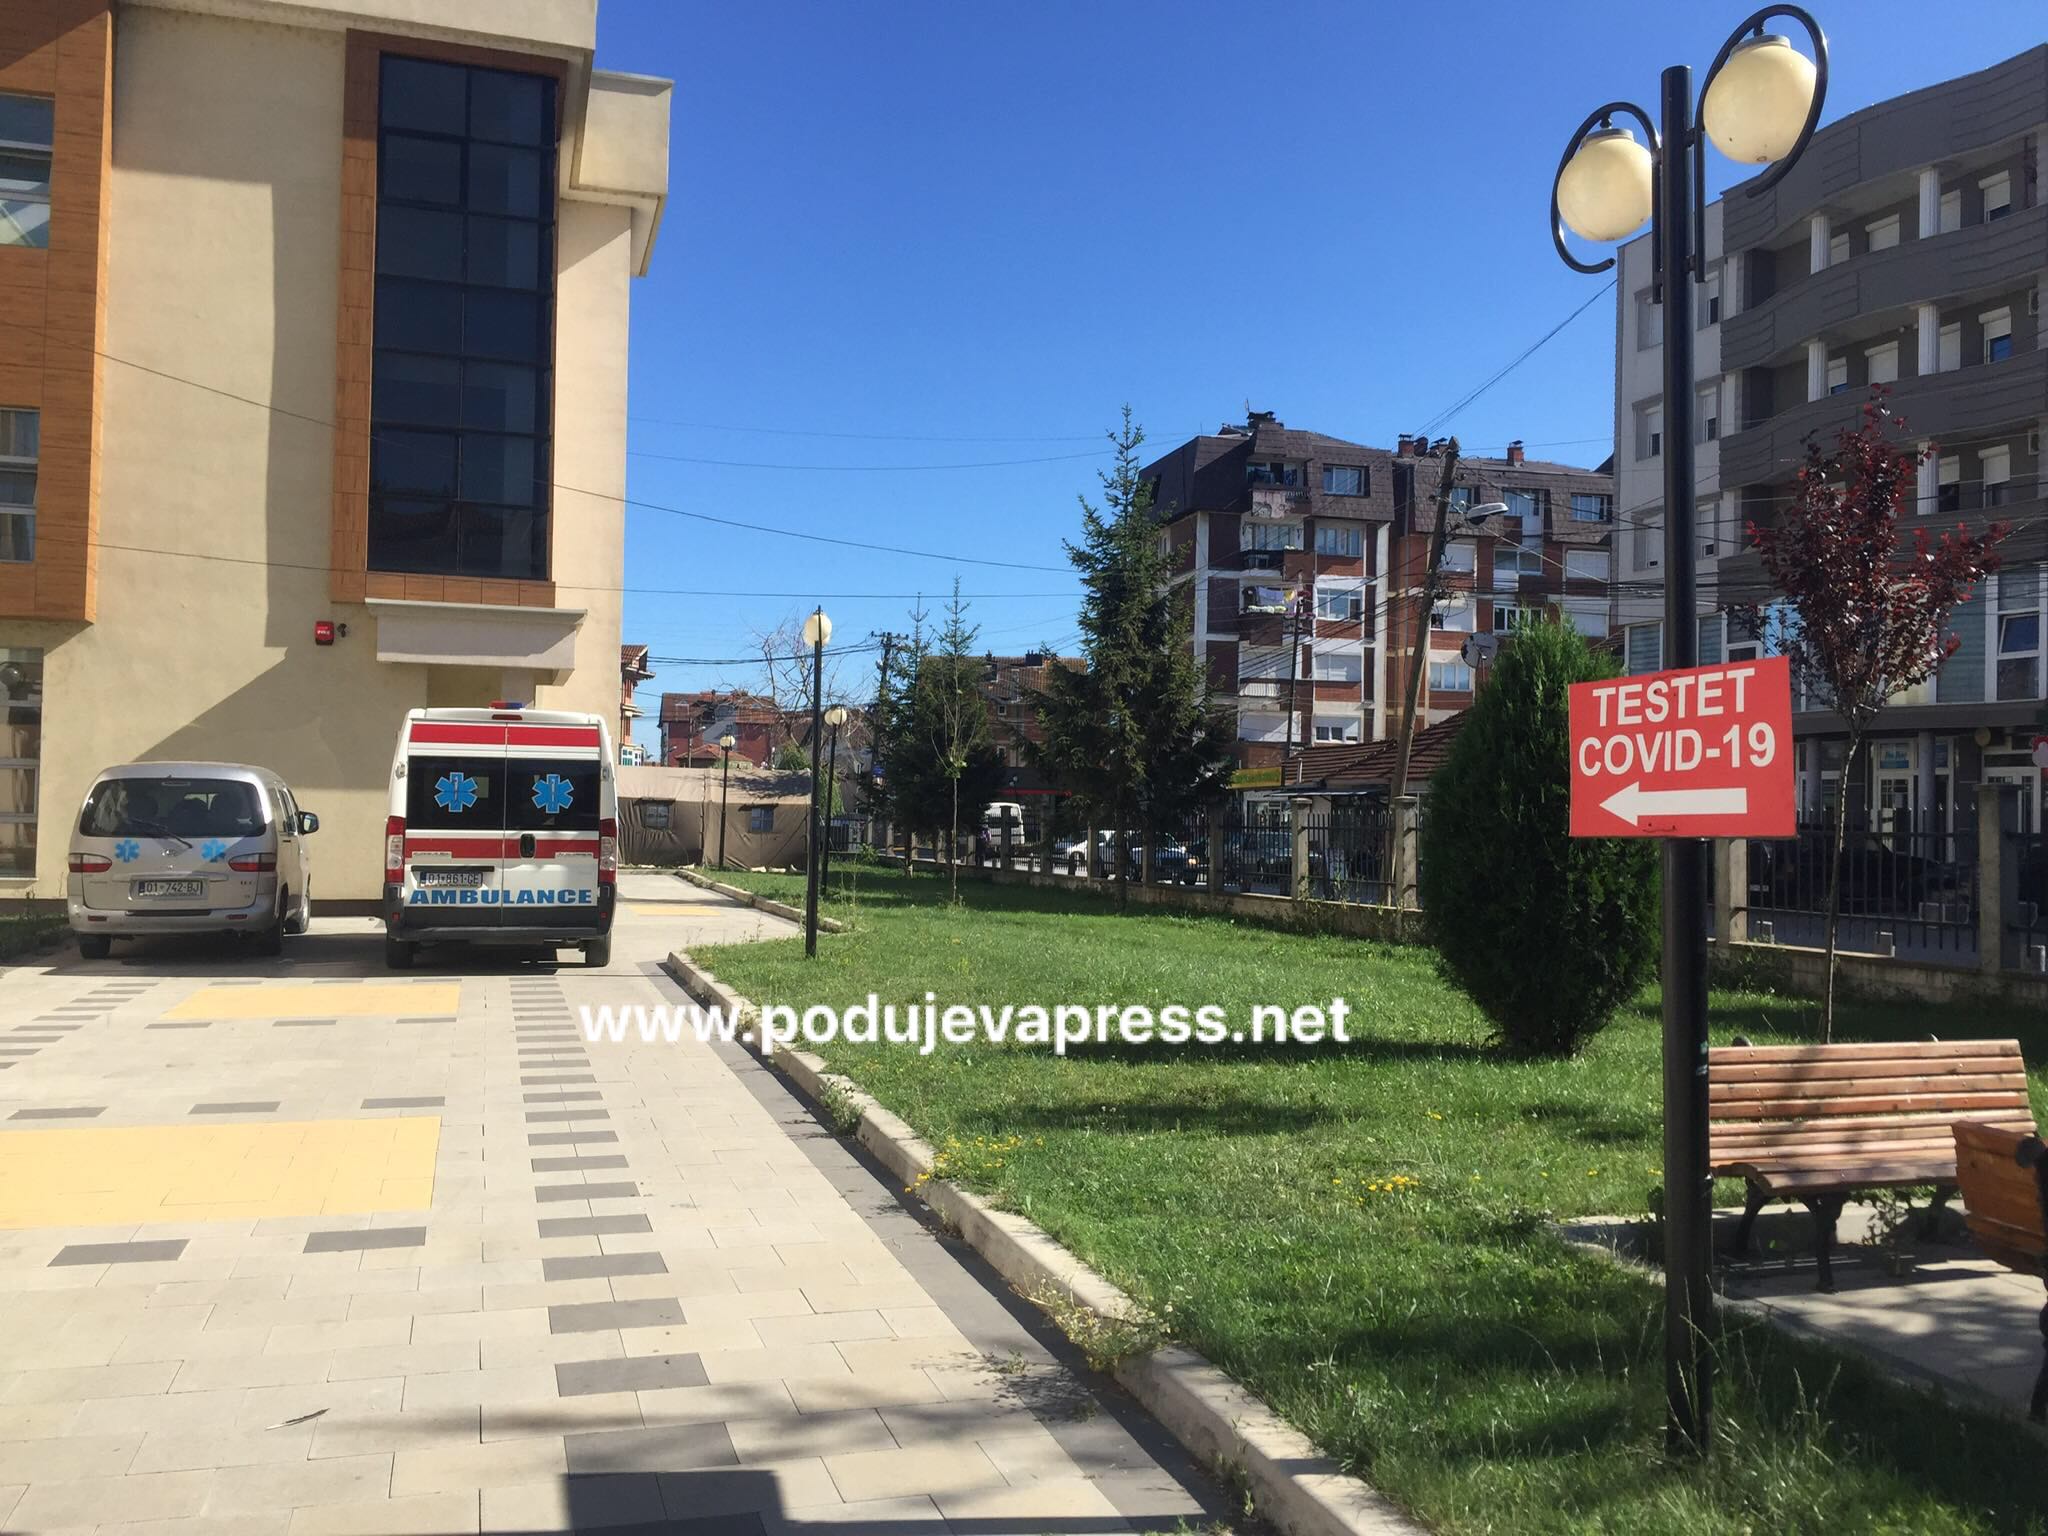  Po rëndohet situata në Podujevë, sot 26 raste me COVID-19